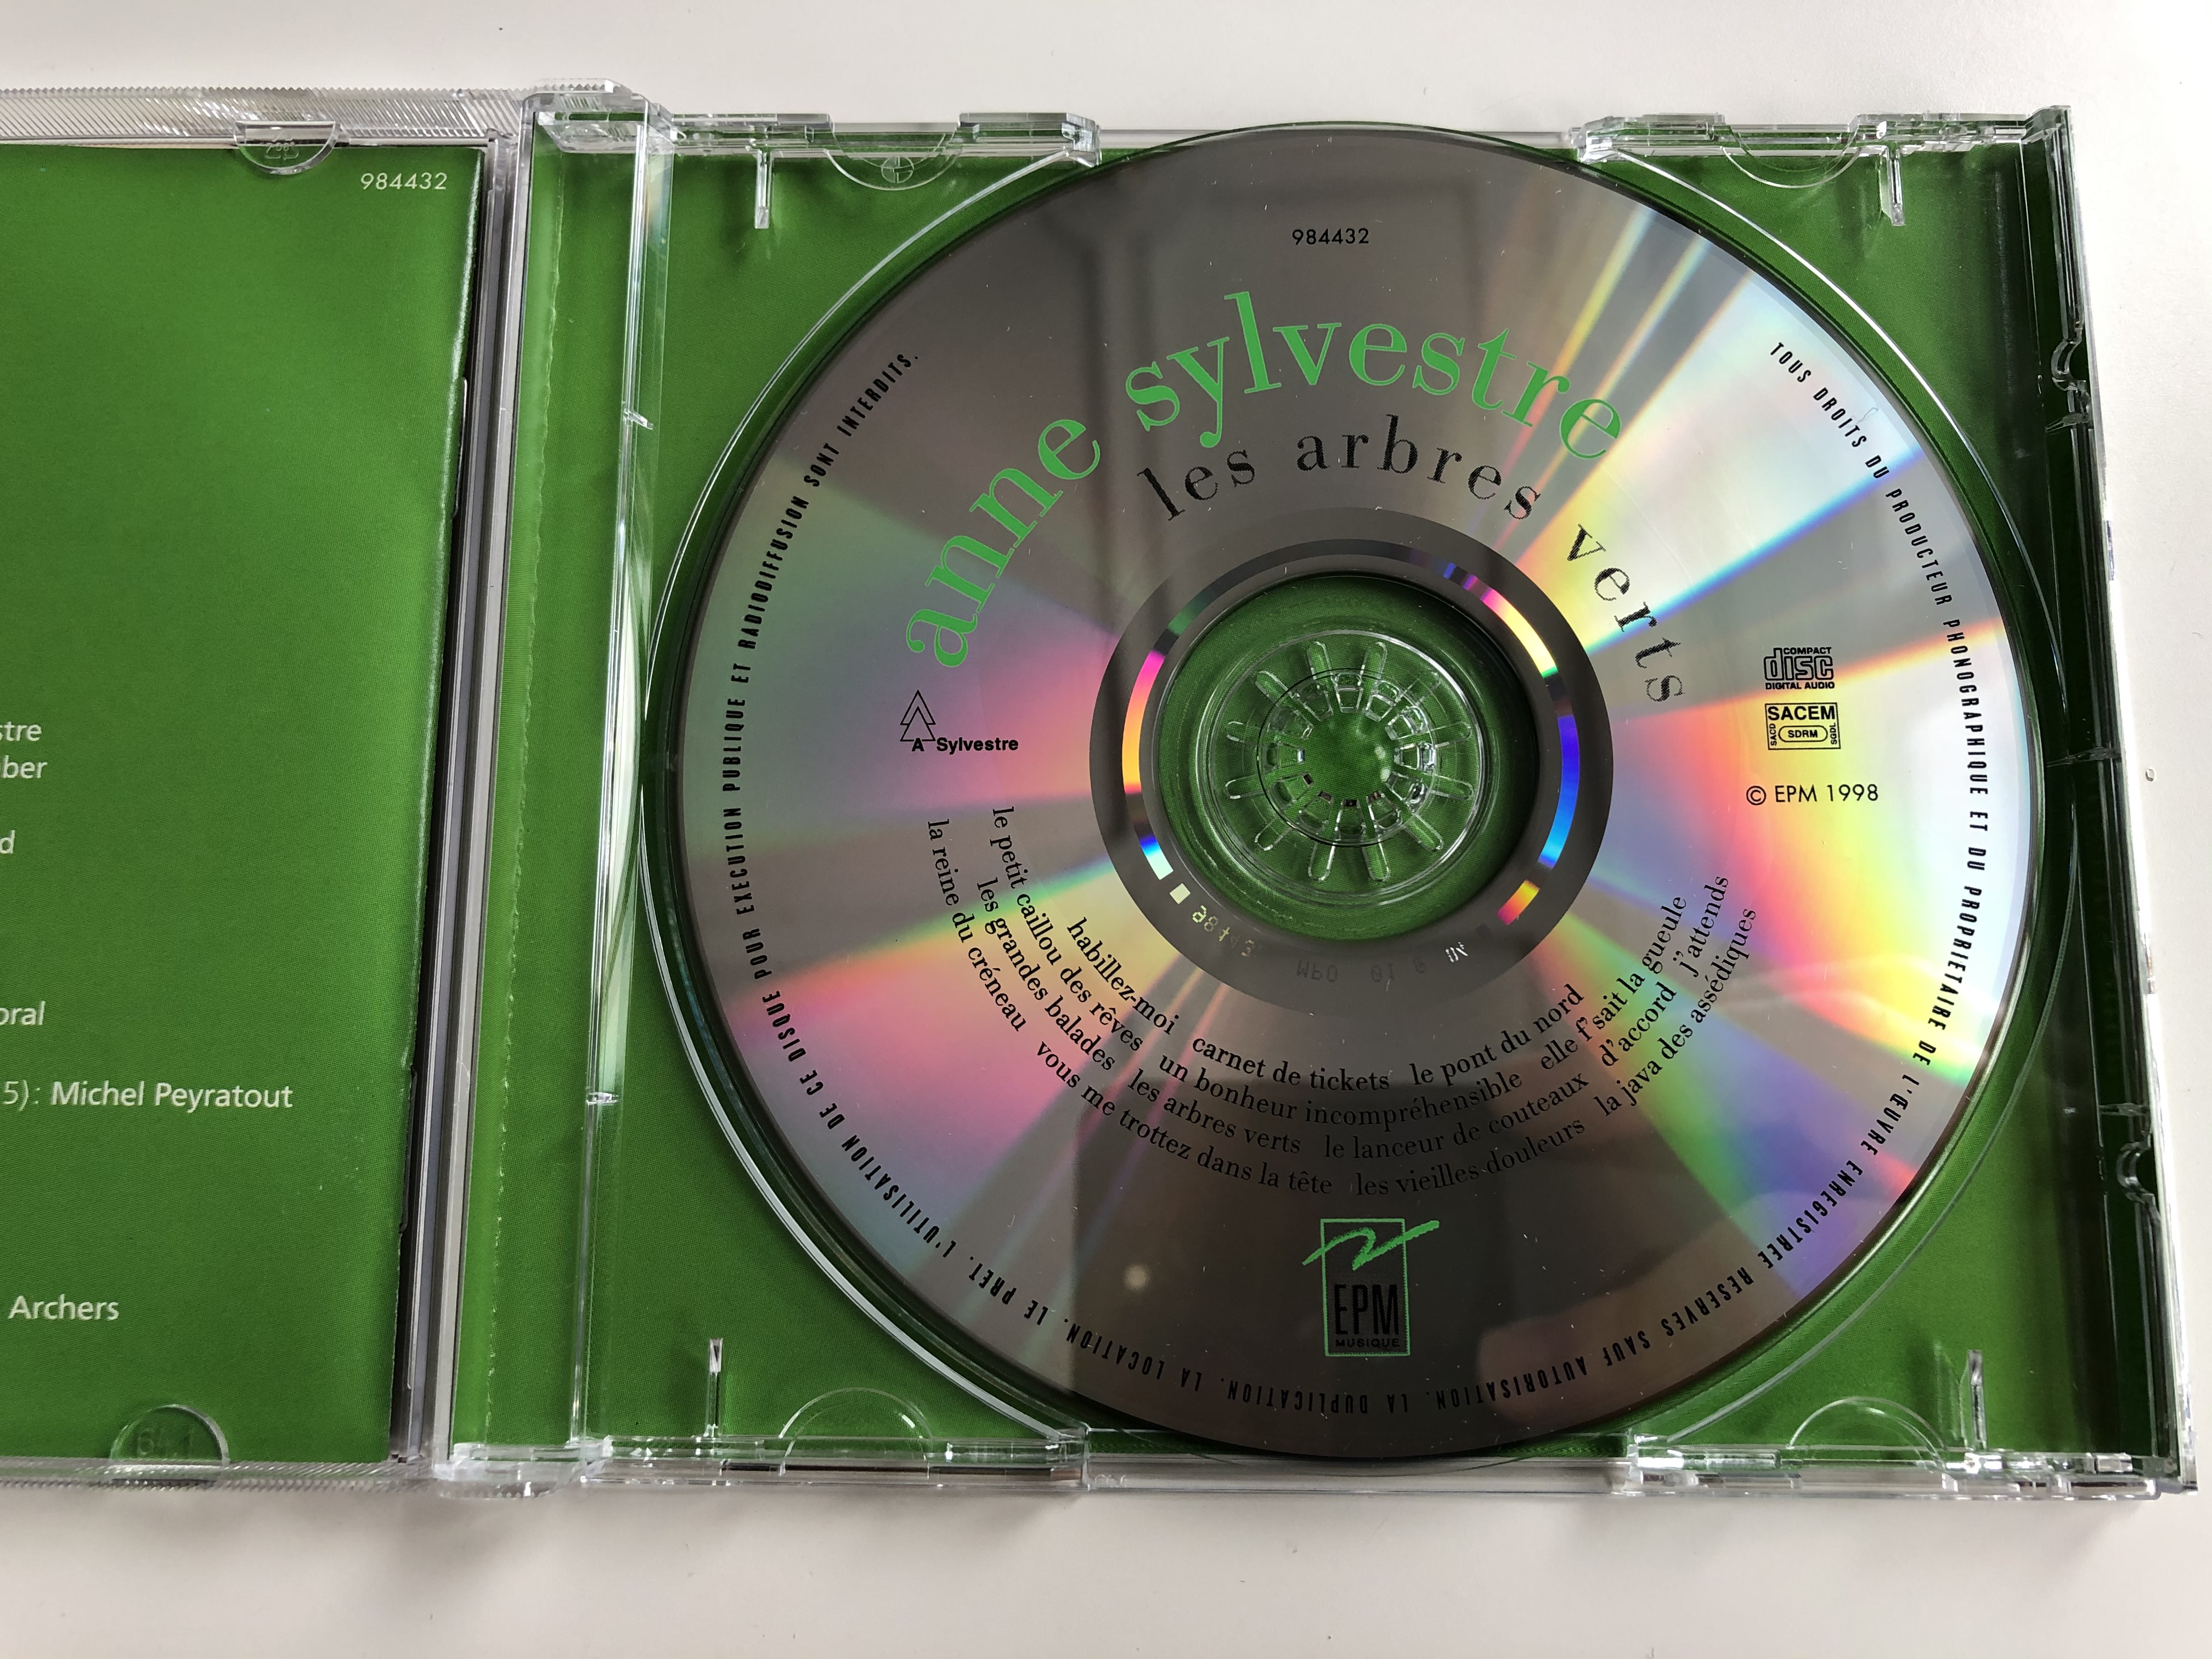 anne-sylvestre-les-arbres-verts-epm-musique-audio-cd-1998-984432-7-.jpg